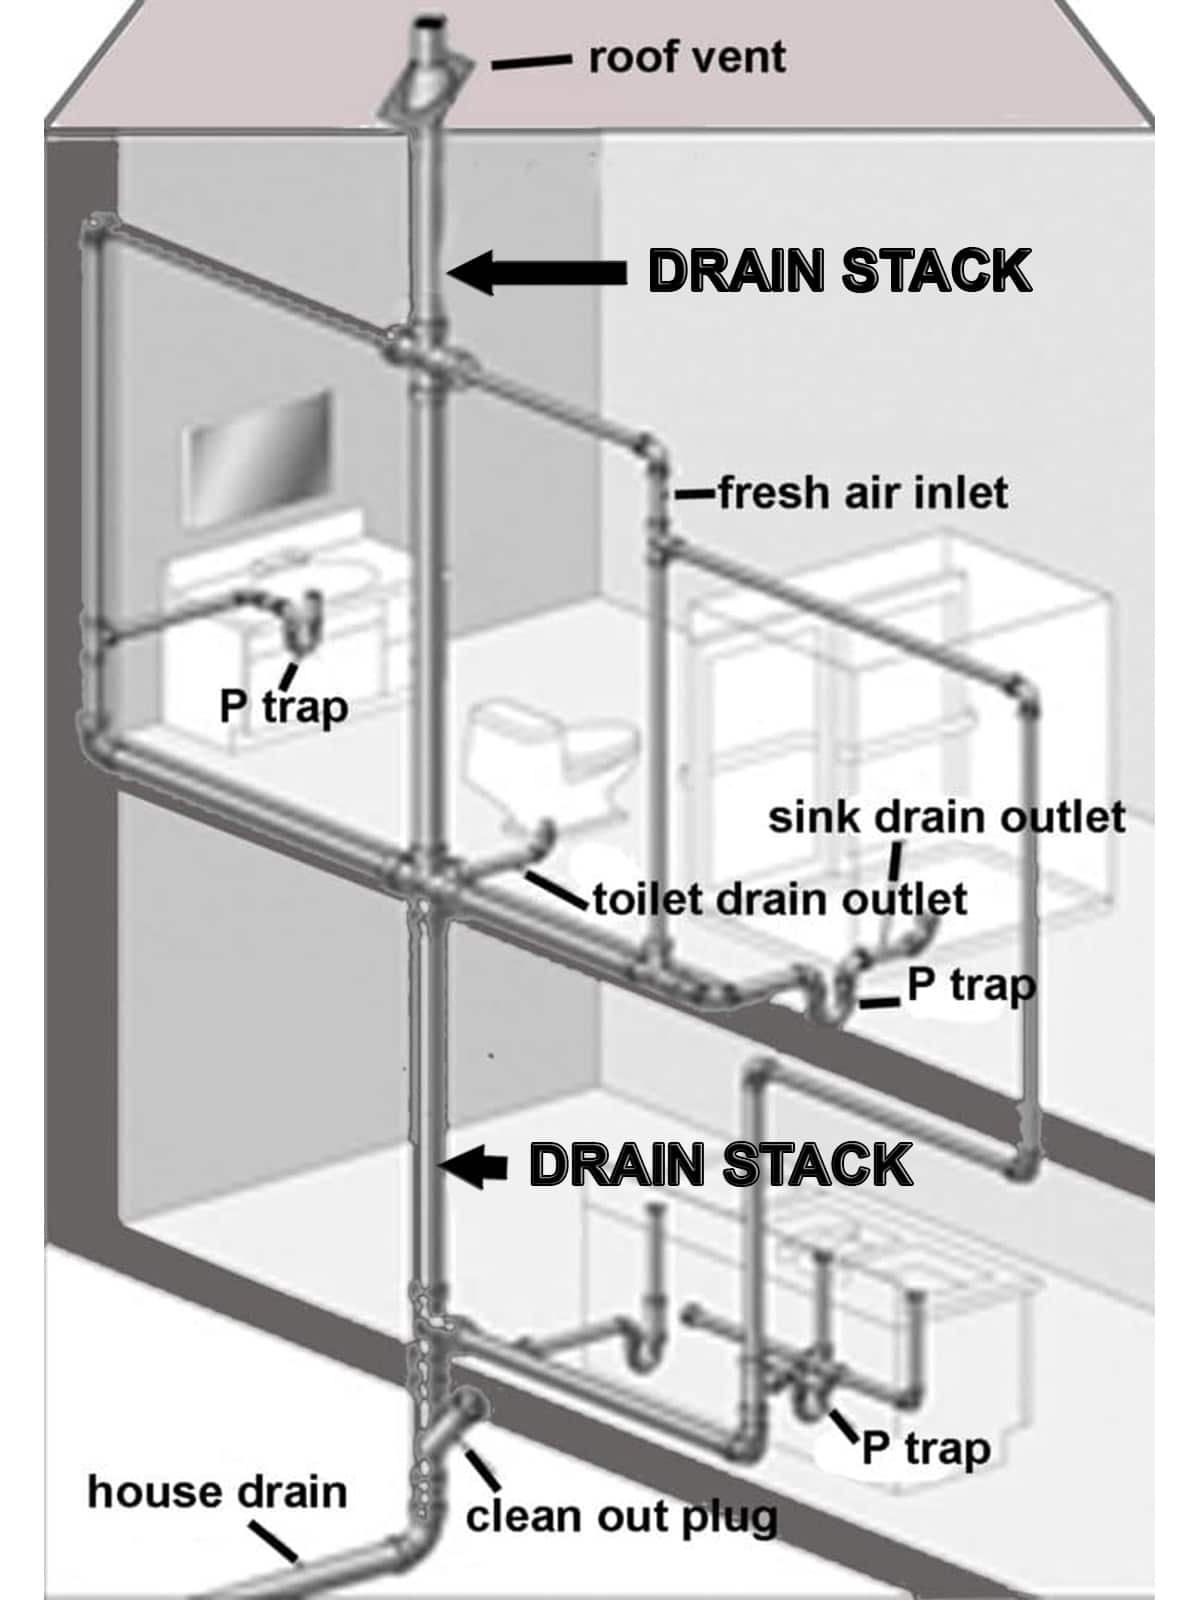 Plumbing drain stack diagram.